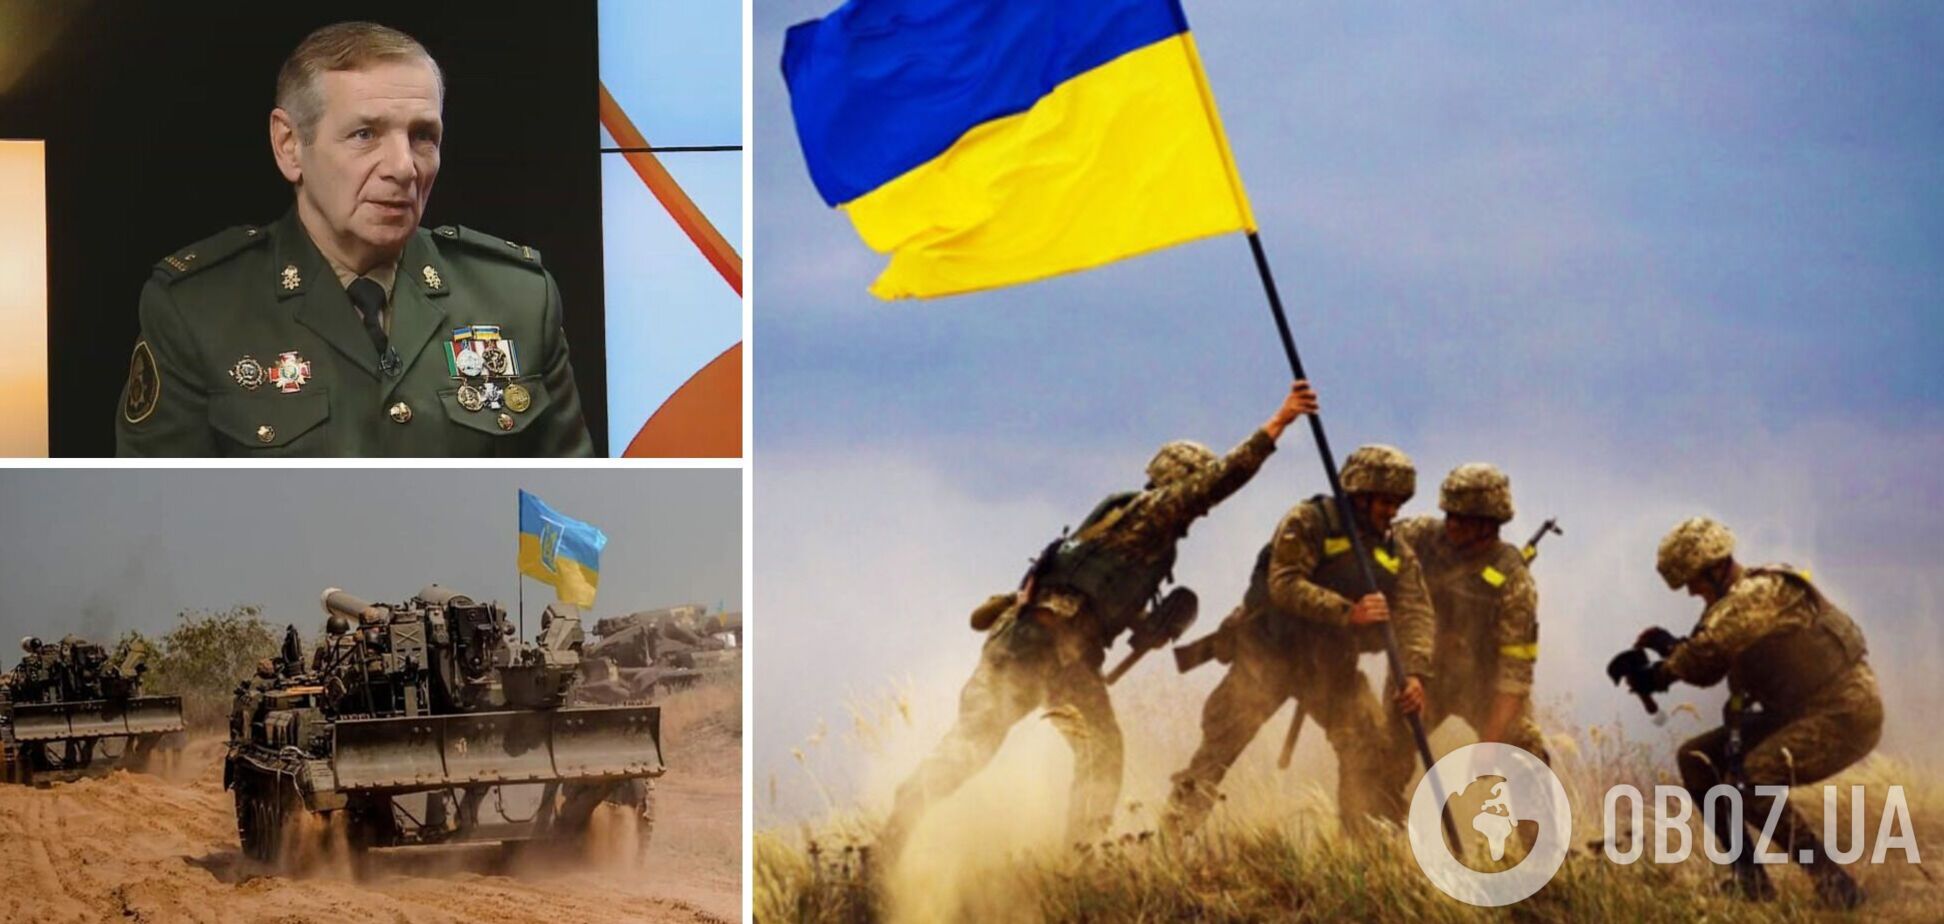 Майор Гетьман: ВСУ возьмут Крым в окружение, дальше начнется демилитаризация России. Интервью